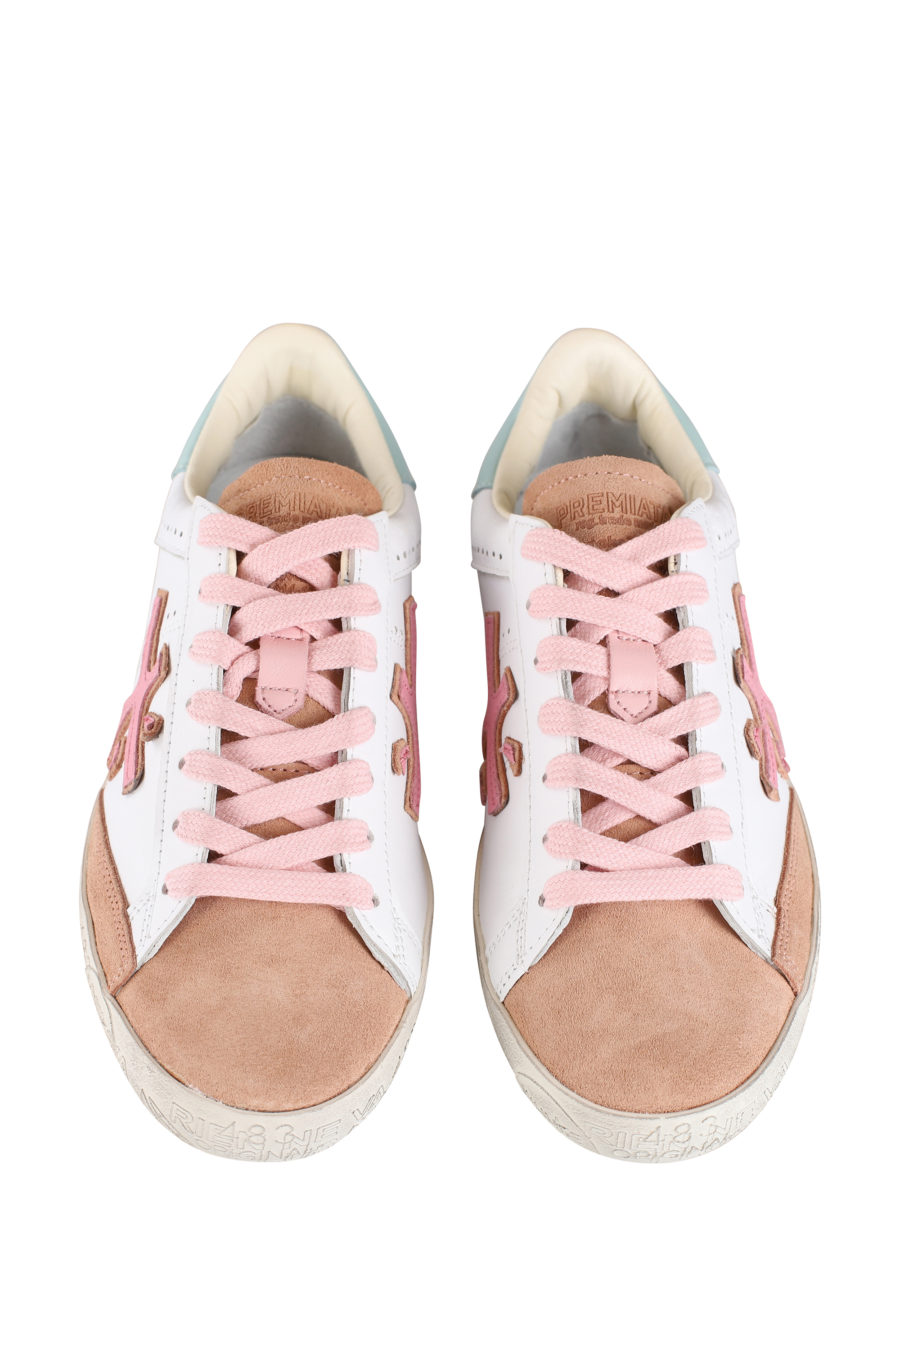 Zapatilla blanca con detalles rosa "Stevend" - IMG 9630